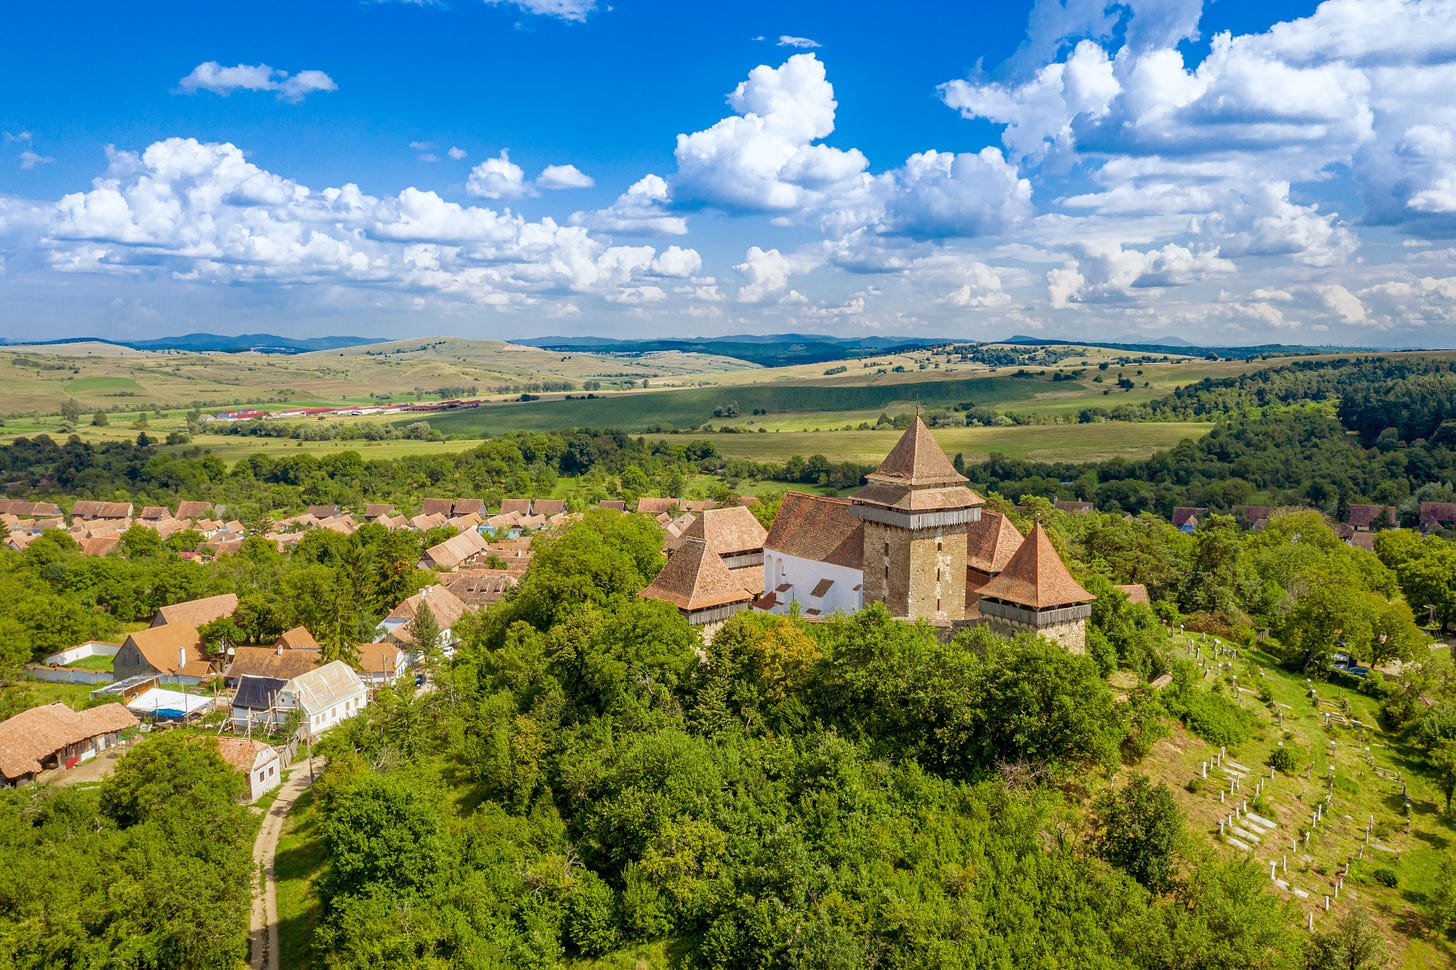 villaggio rumeno con chiesa sassone fortificata immersa nella campagna